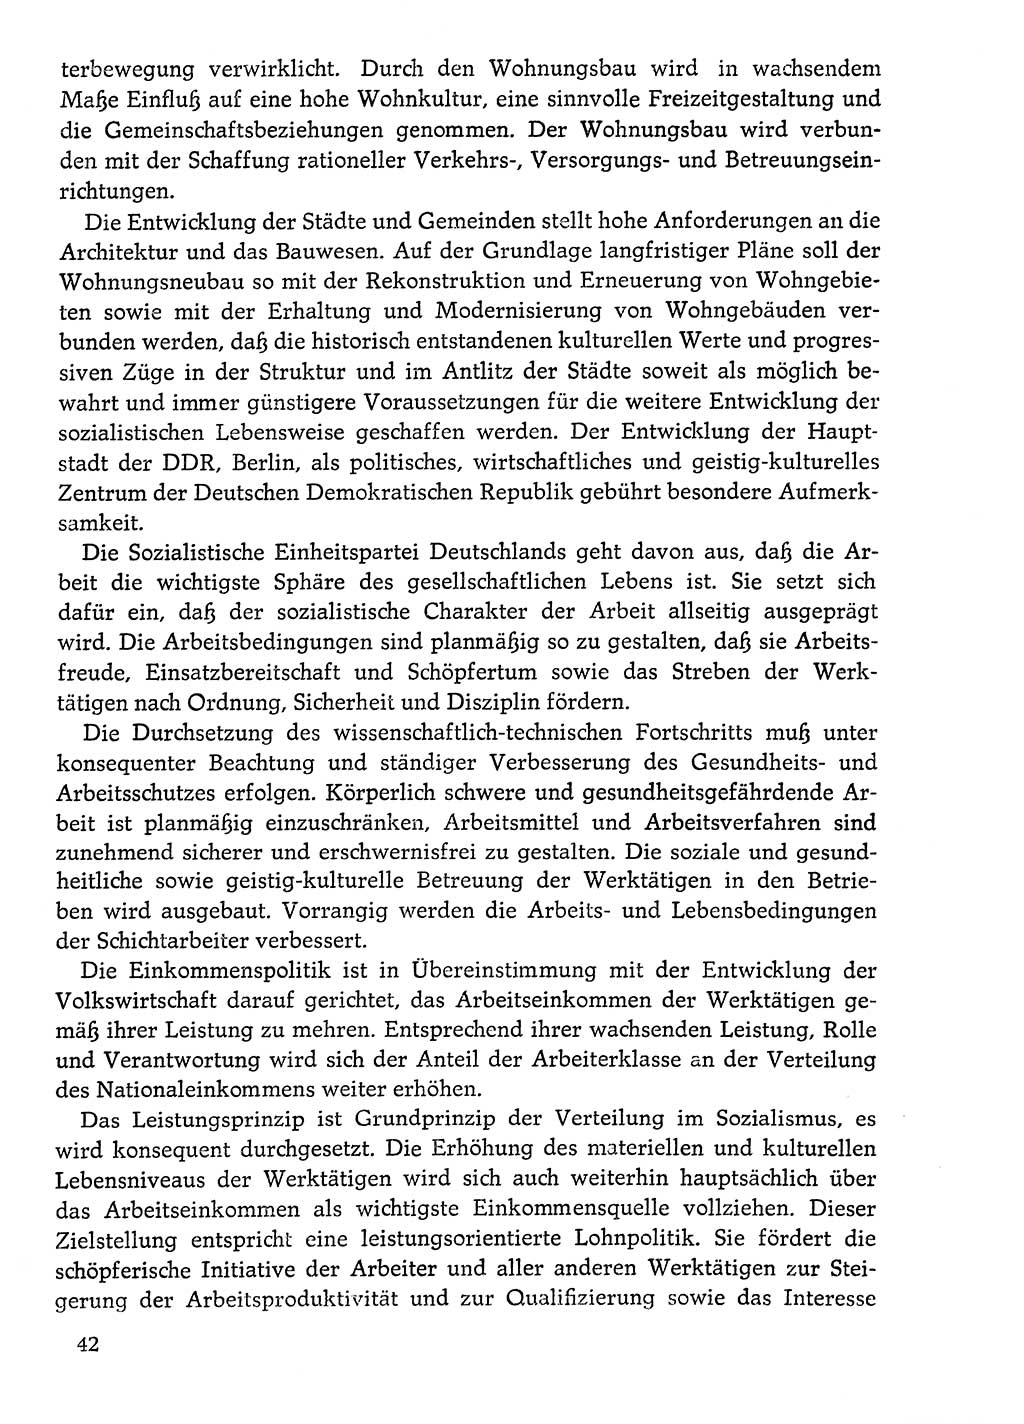 Dokumente der Sozialistischen Einheitspartei Deutschlands (SED) [Deutsche Demokratische Republik (DDR)] 1976-1977, Seite 42 (Dok. SED DDR 1976-1977, S. 42)